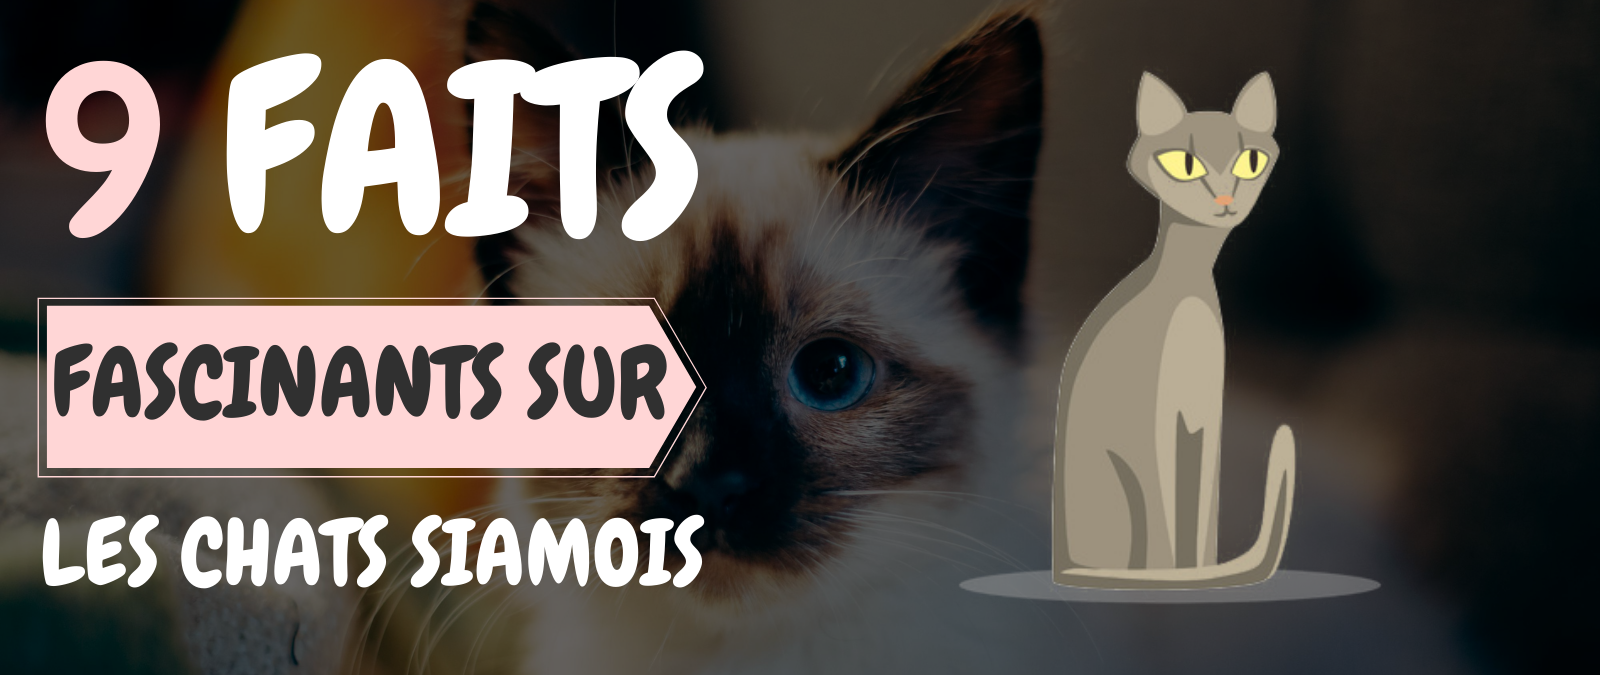 9 faits fascinants sur les chats siamois